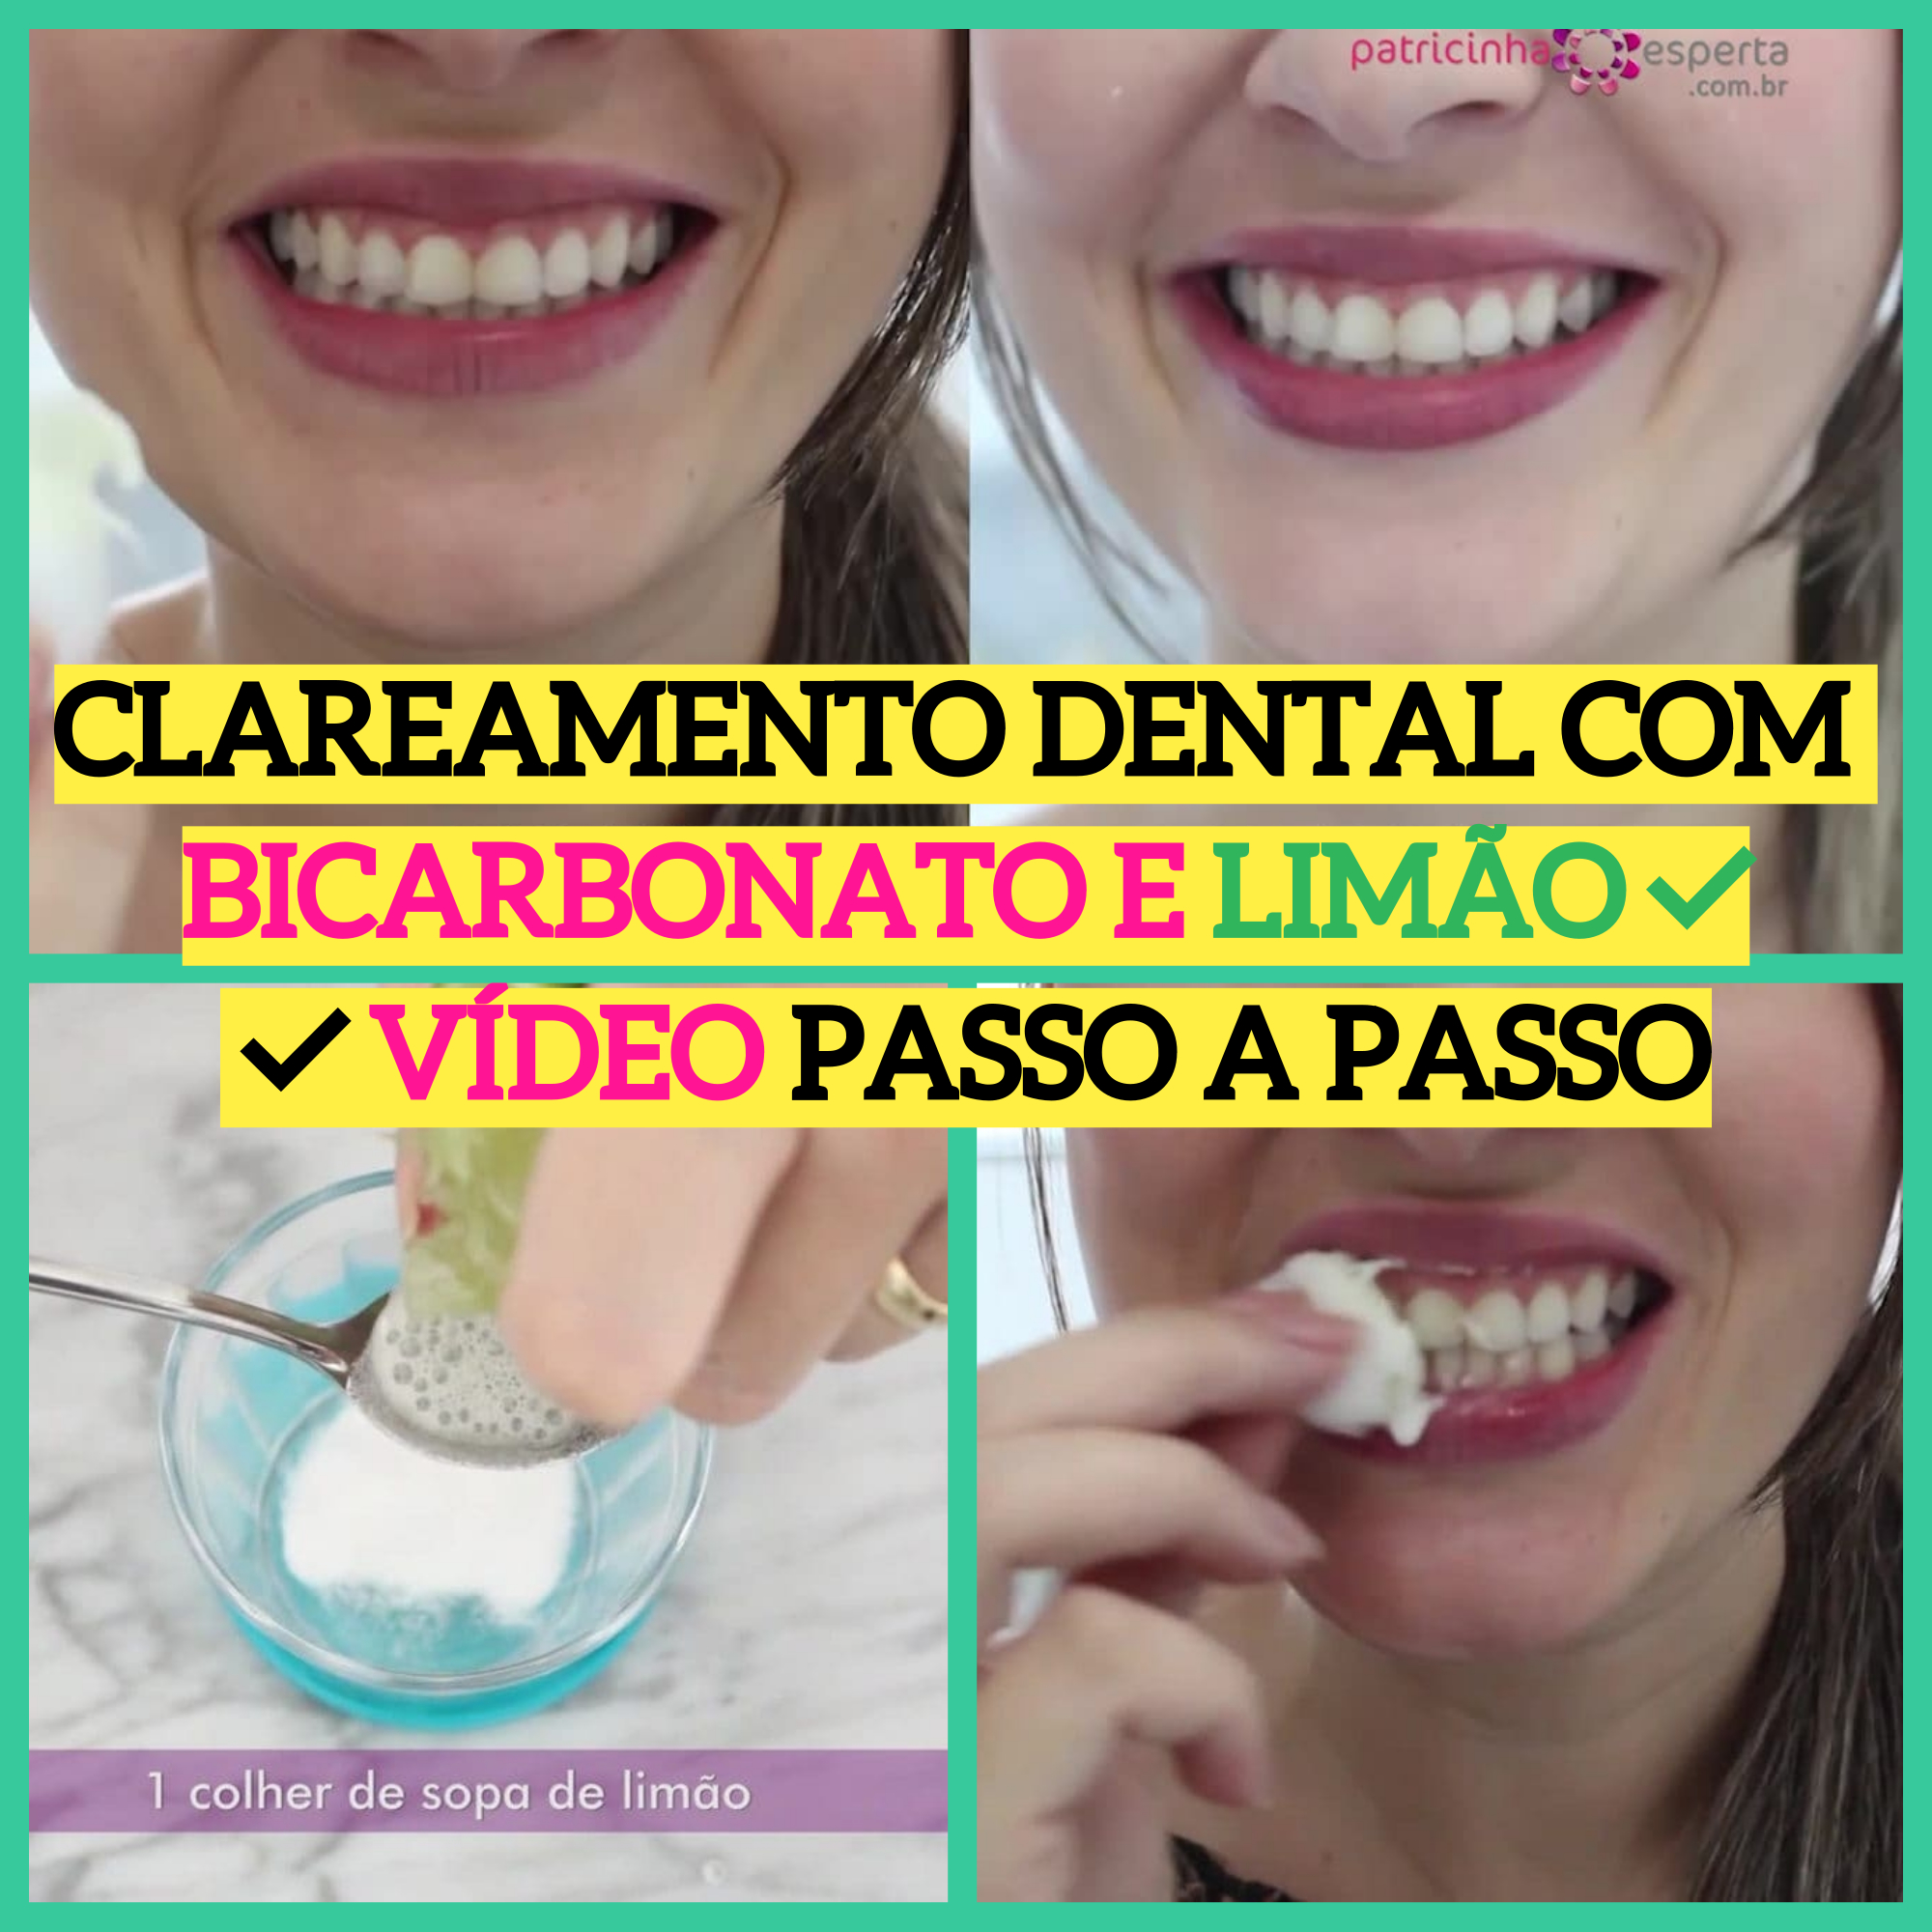 clareamento dental com bicarbonato1 - Clareamento dental com BICARBONATO e LIMÃO ⬅